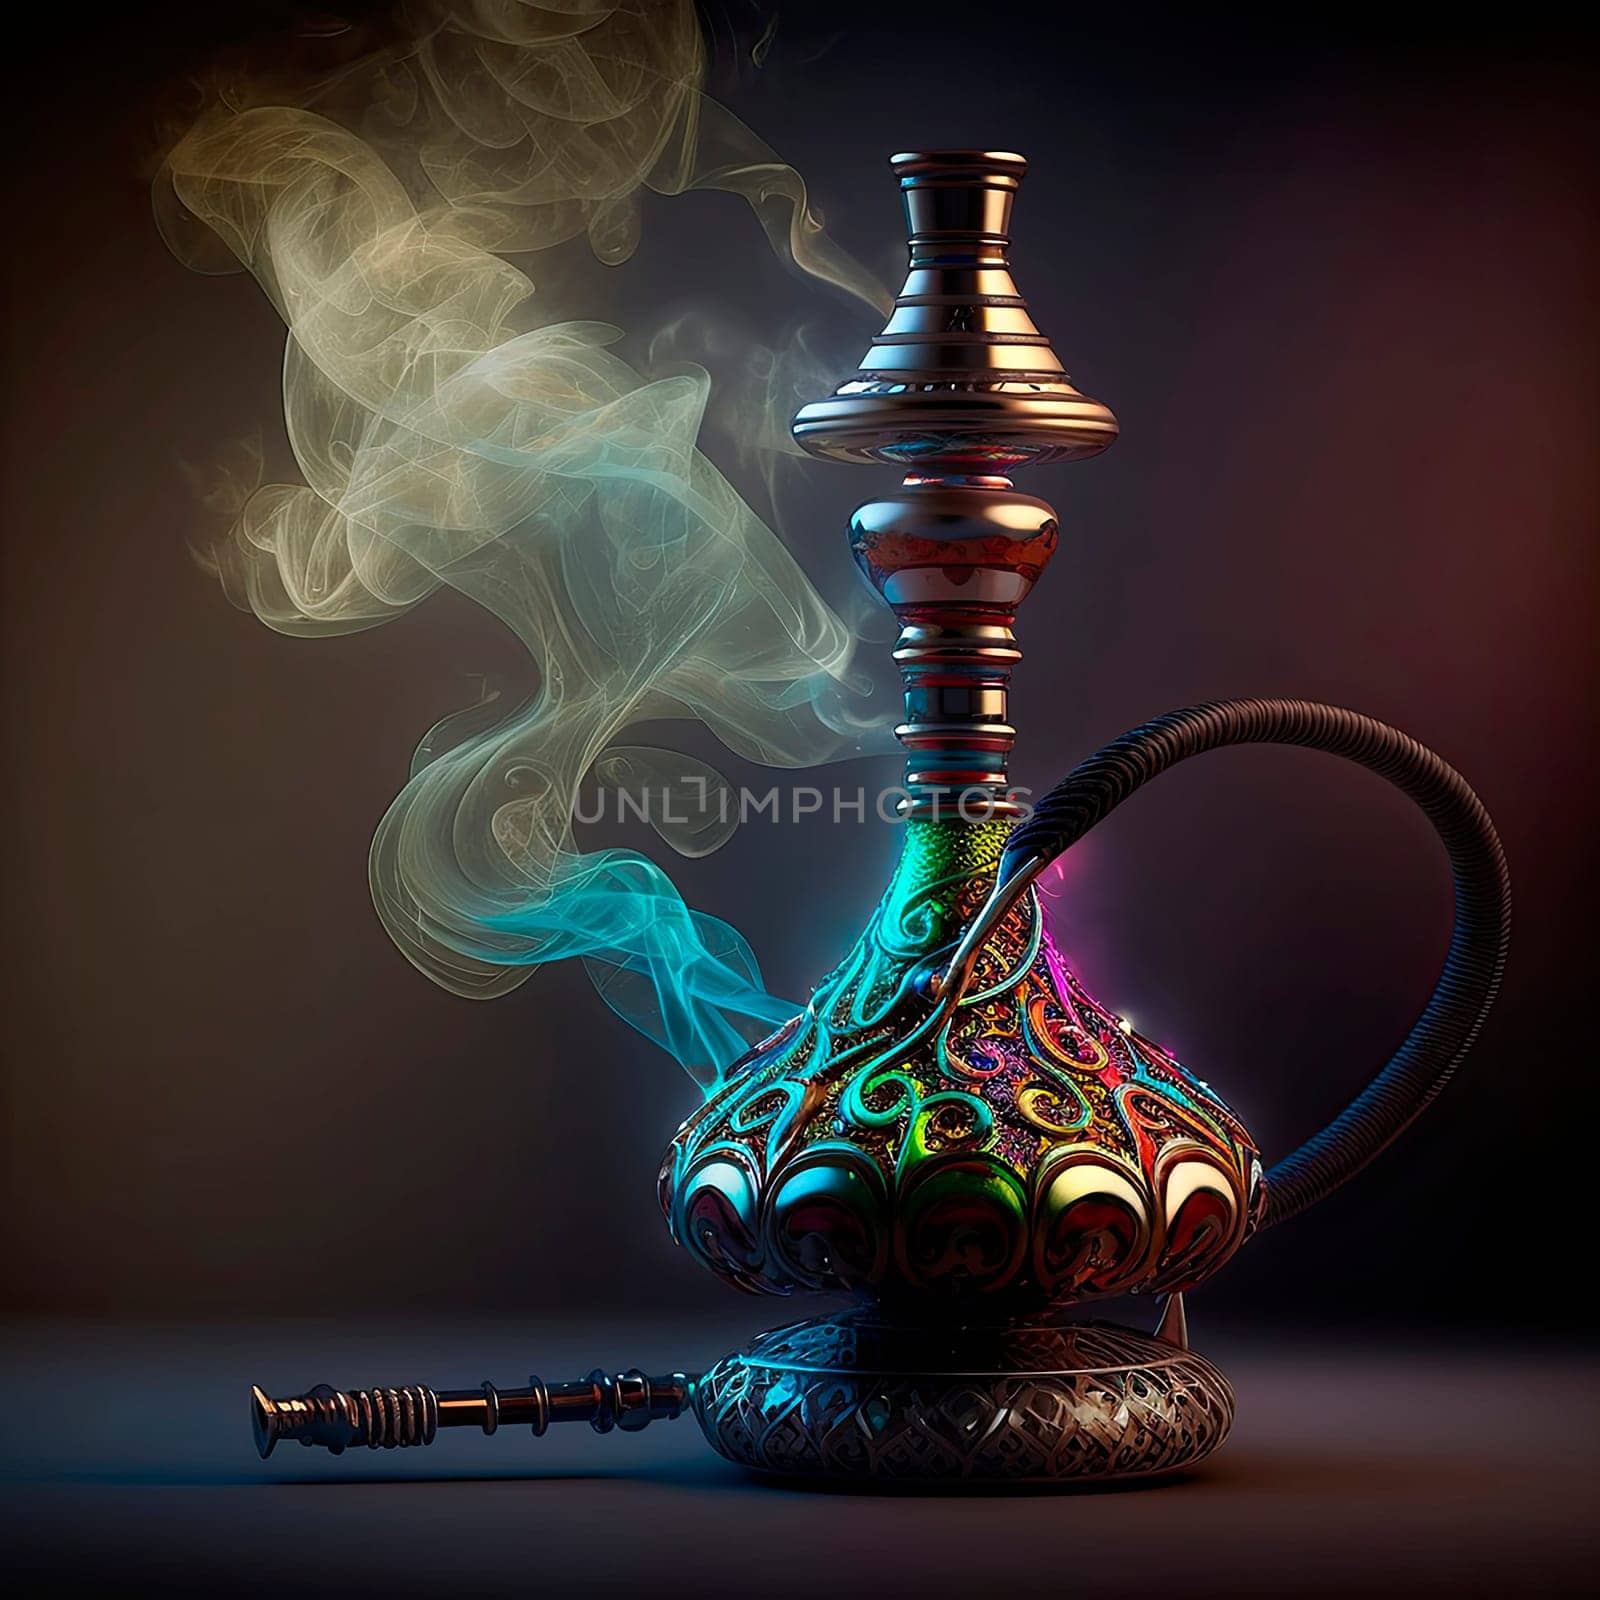 hookah smoke on the table. by yanadjana